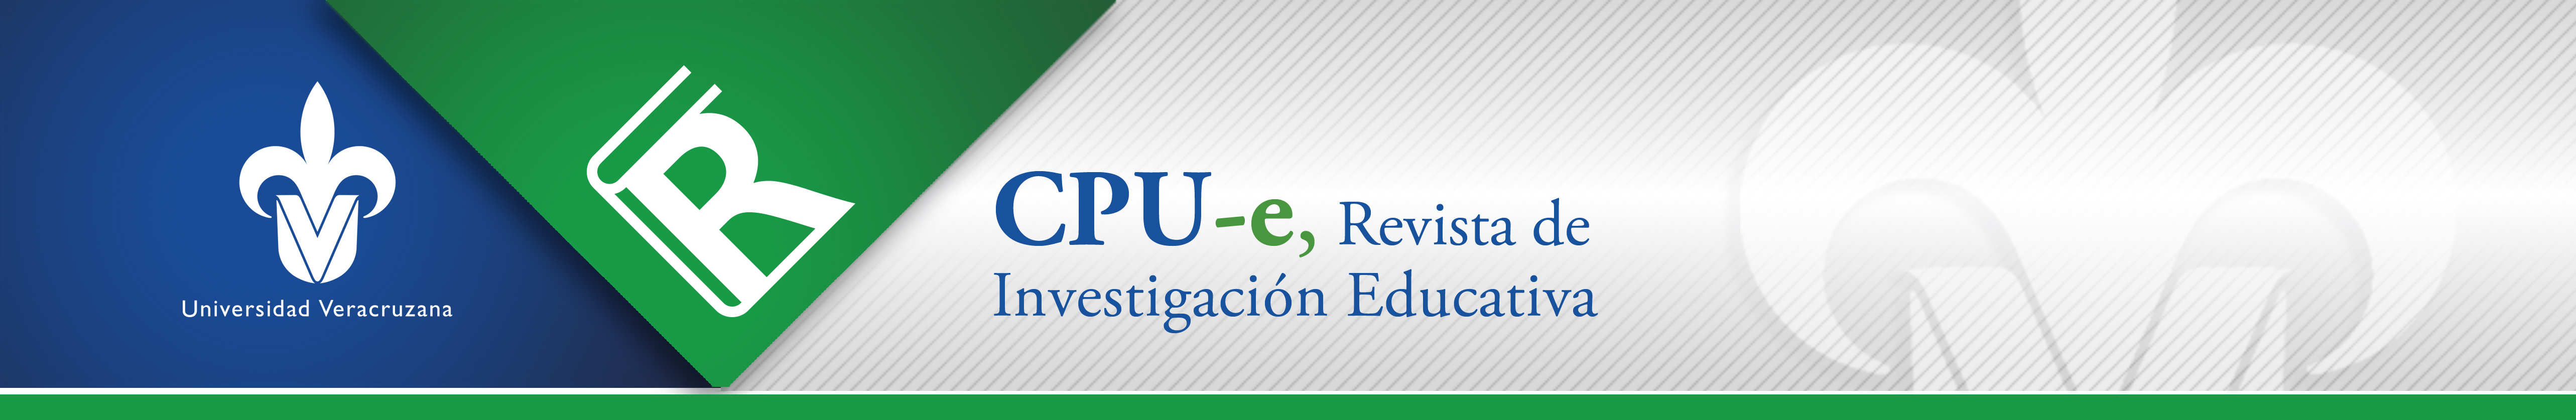 CPU-e, Revista de Investigación Educativa